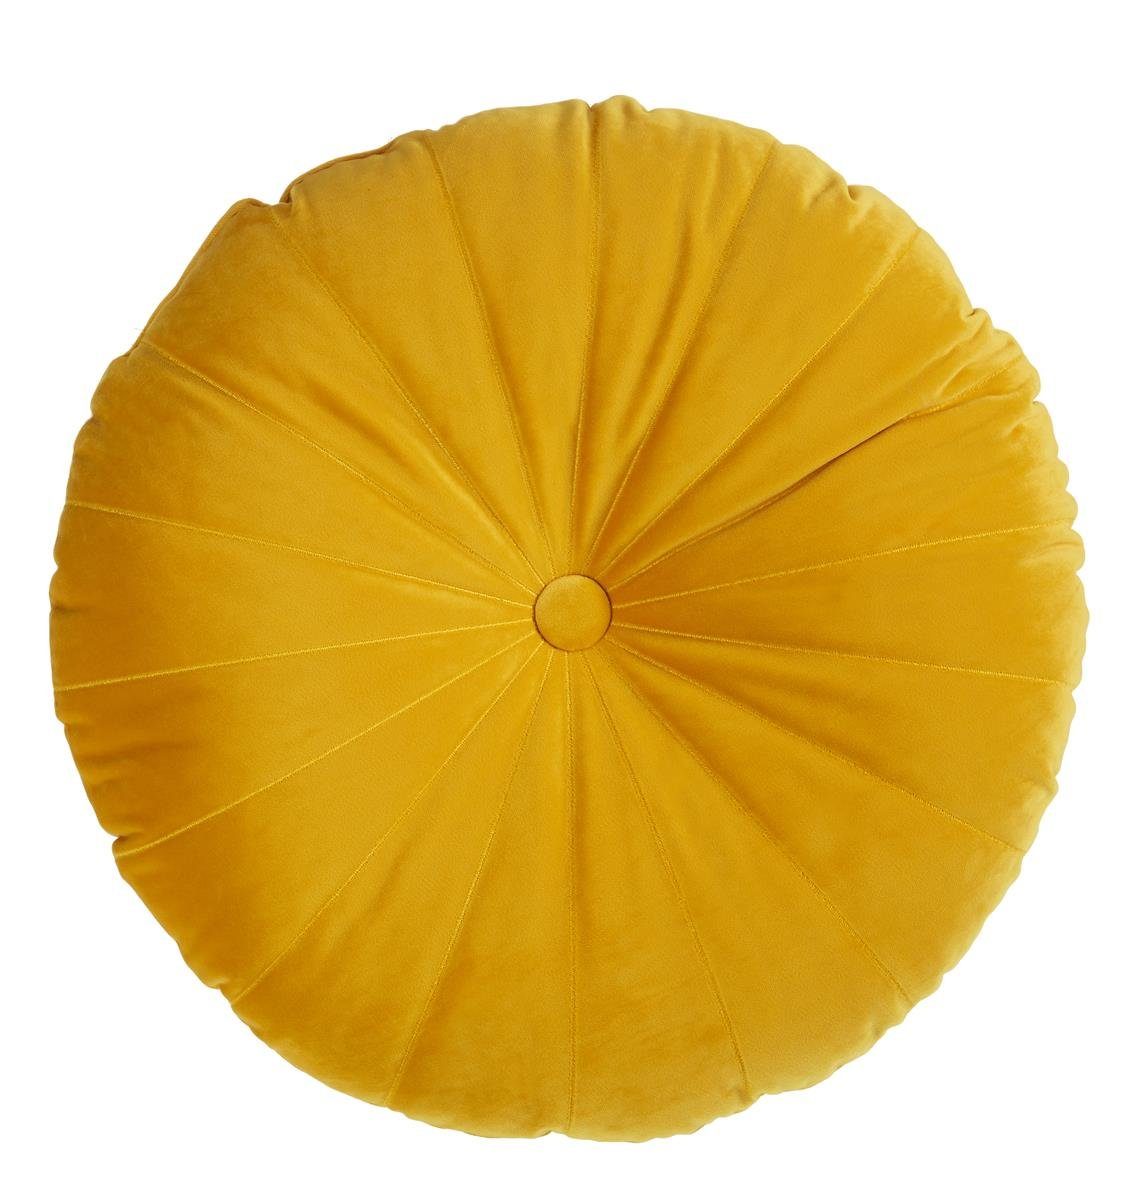 KAAT Amsterdam Dekokissen Mandarin Yellow 40X40 Gelb 40 x 40 cm 1 Zierkisse